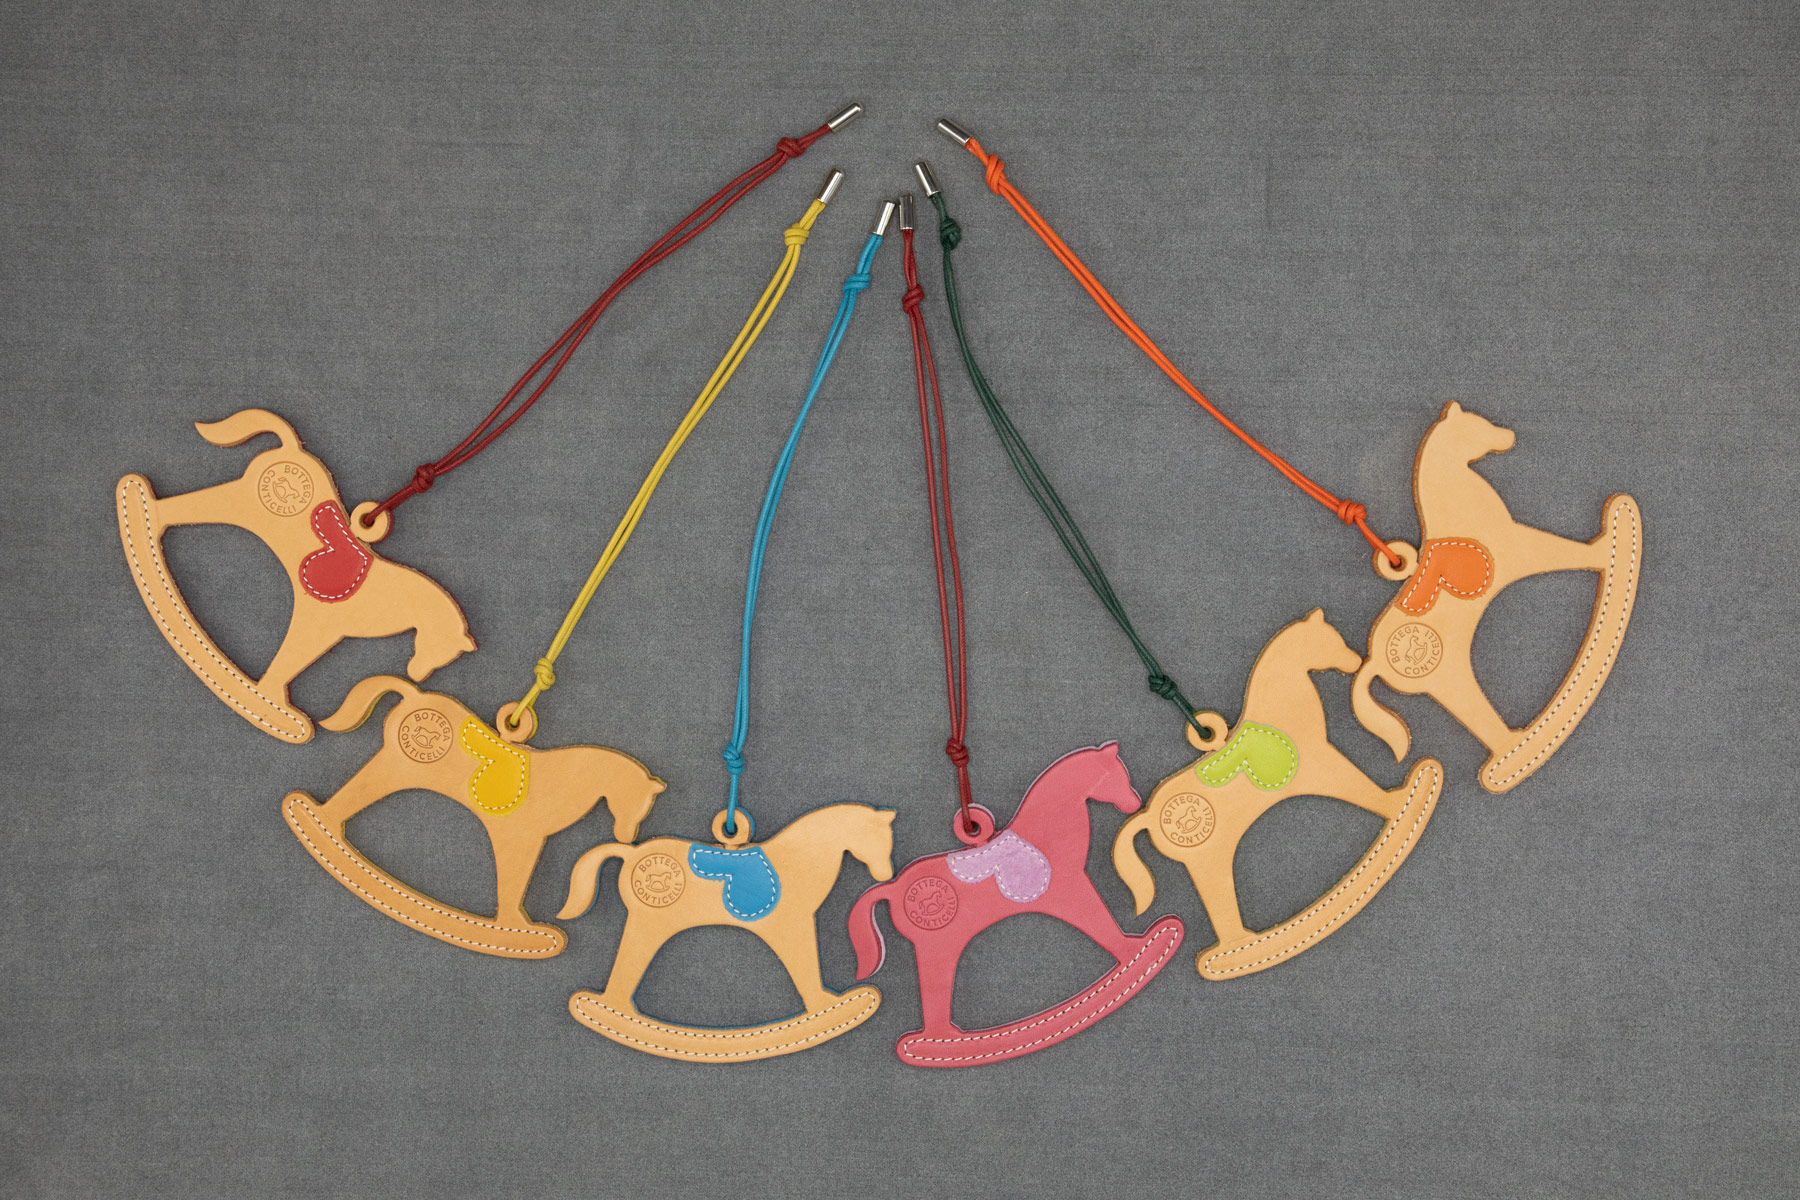 Charms for your bag, by Bottega Conticelli, ciondolo da borsa disponibile in diverse colorazioni